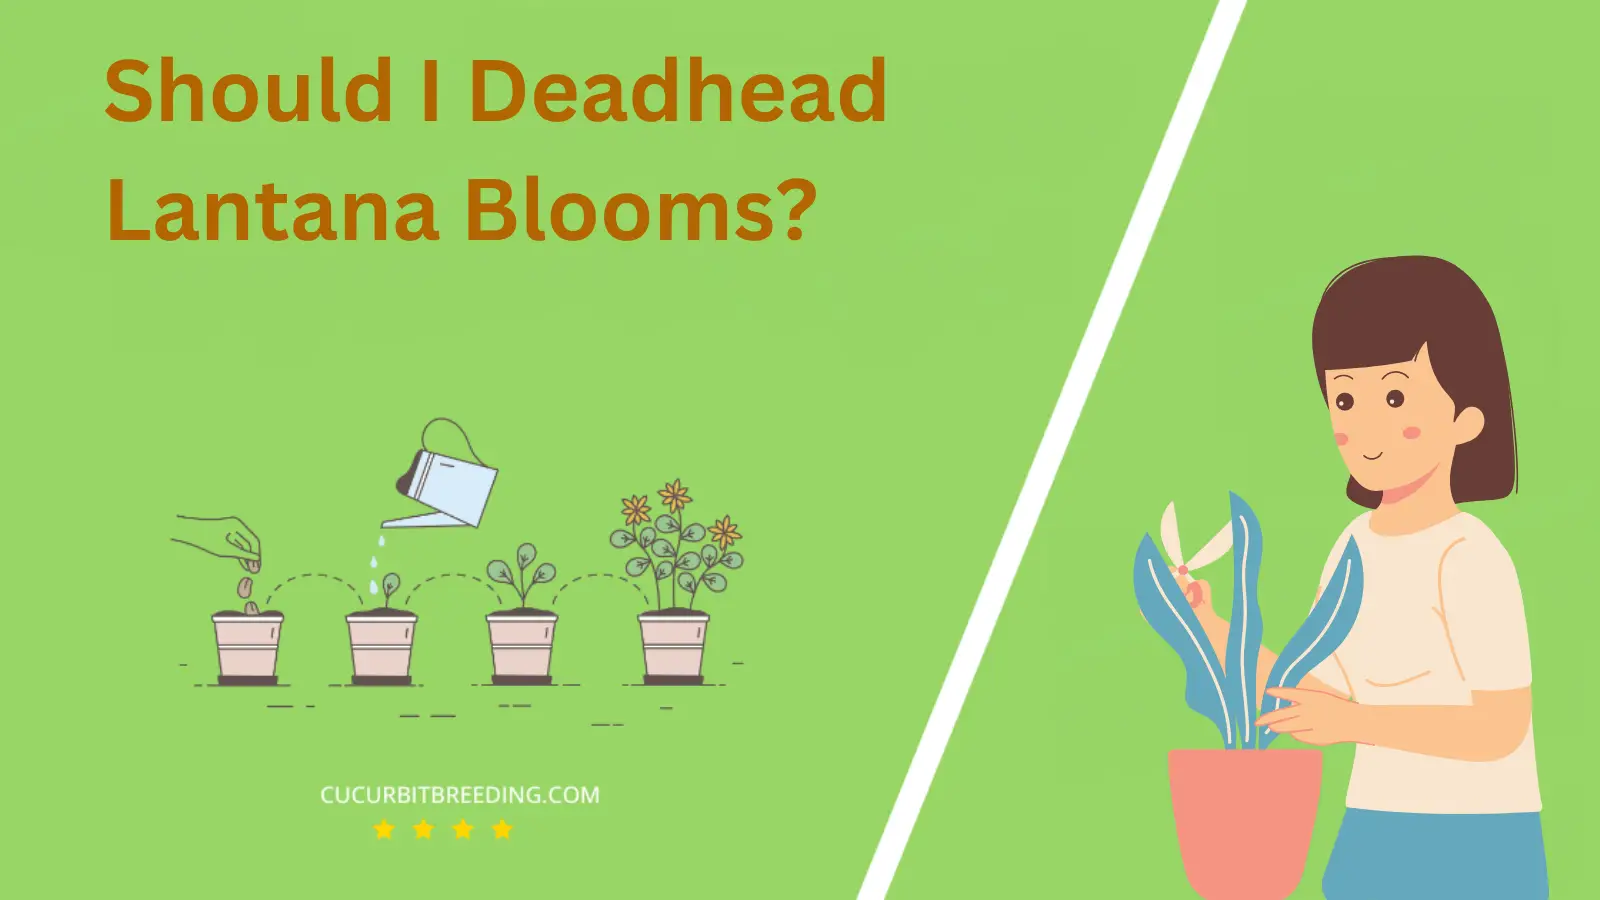 Should I Deadhead Lantana Blooms?